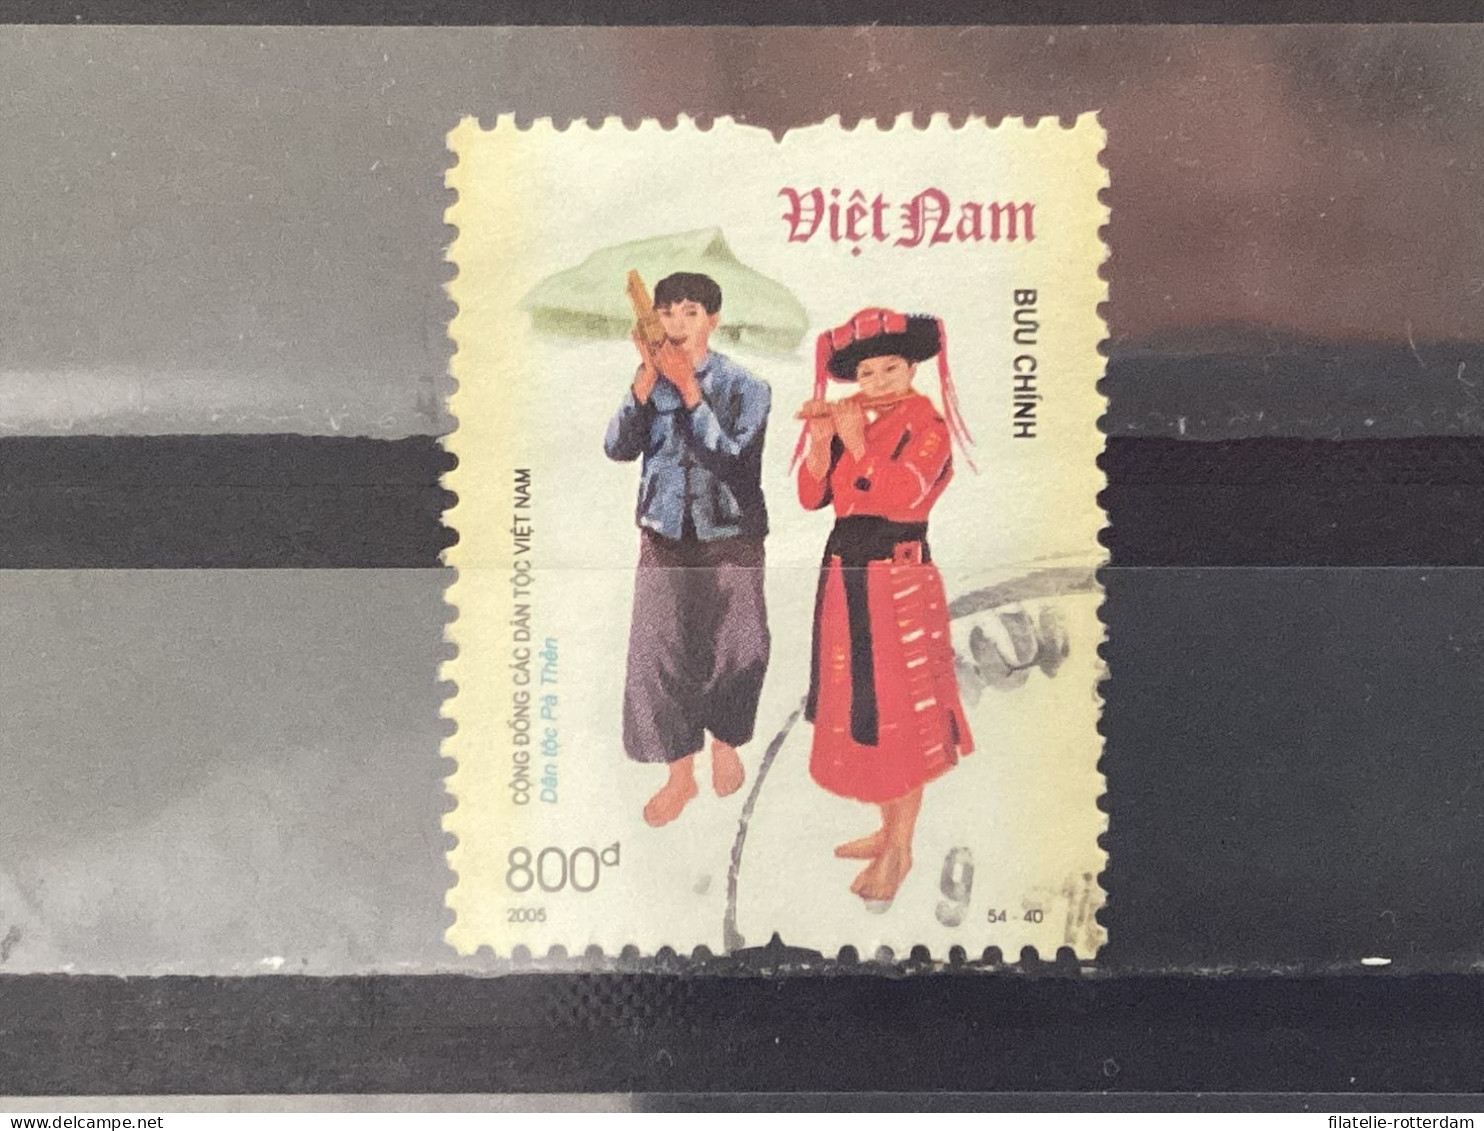 Vietnam - Costumes (800) 2005 - Vietnam